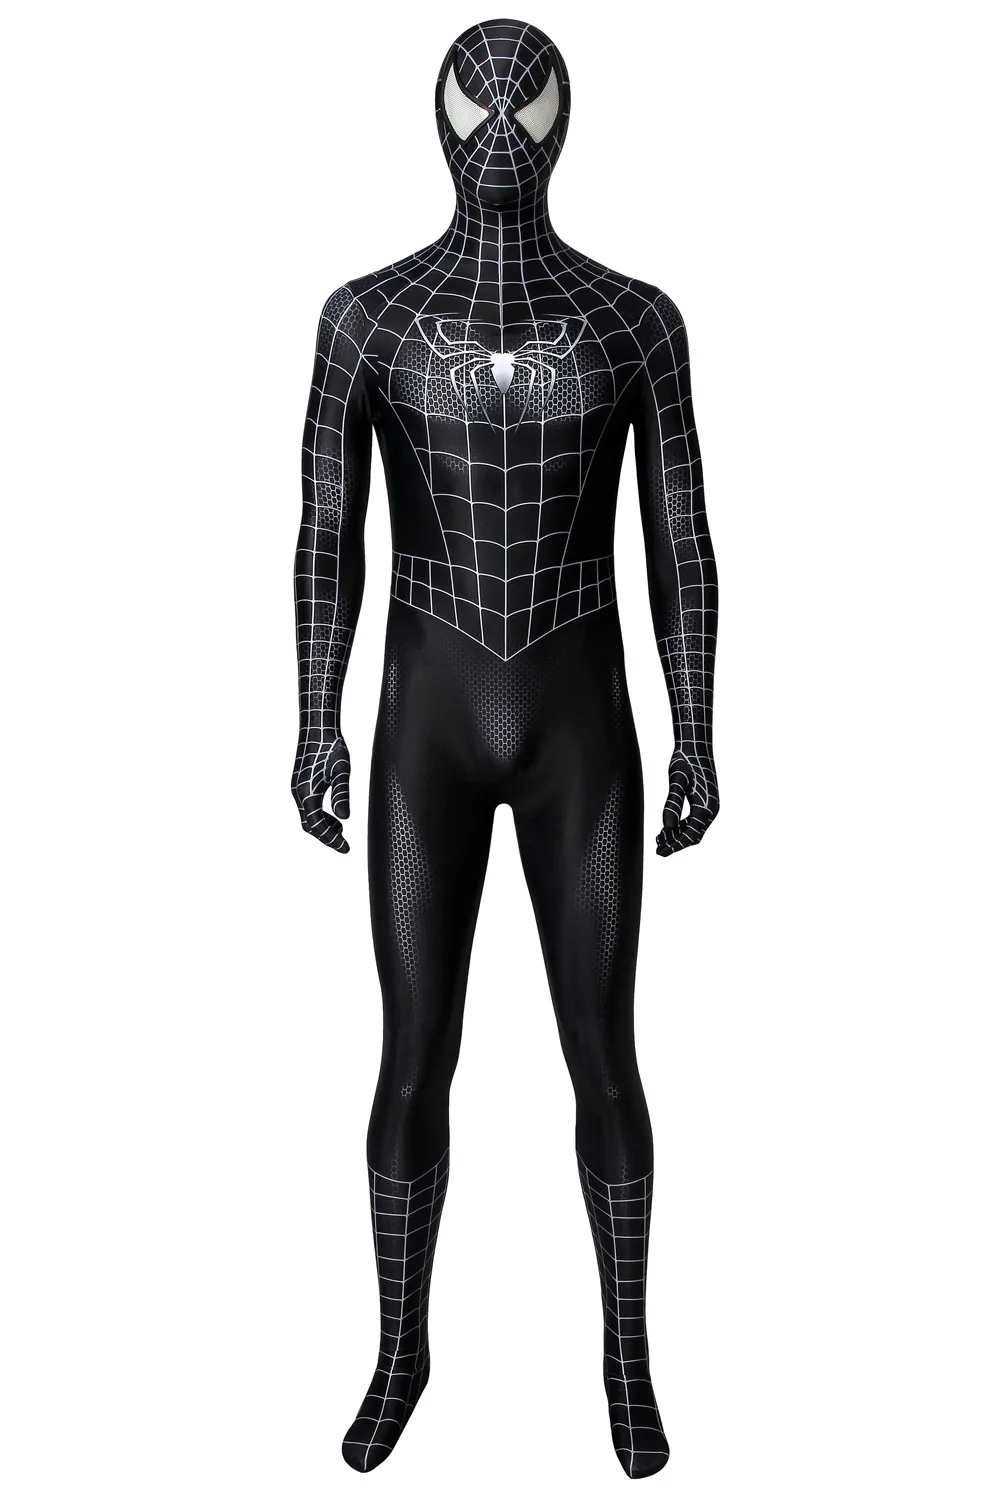 

Men Black Spider Suit Zenta Cosplay Superhero Venom Costume Eddie Brock Jumpsuit Bodysuit Halloween For Adult